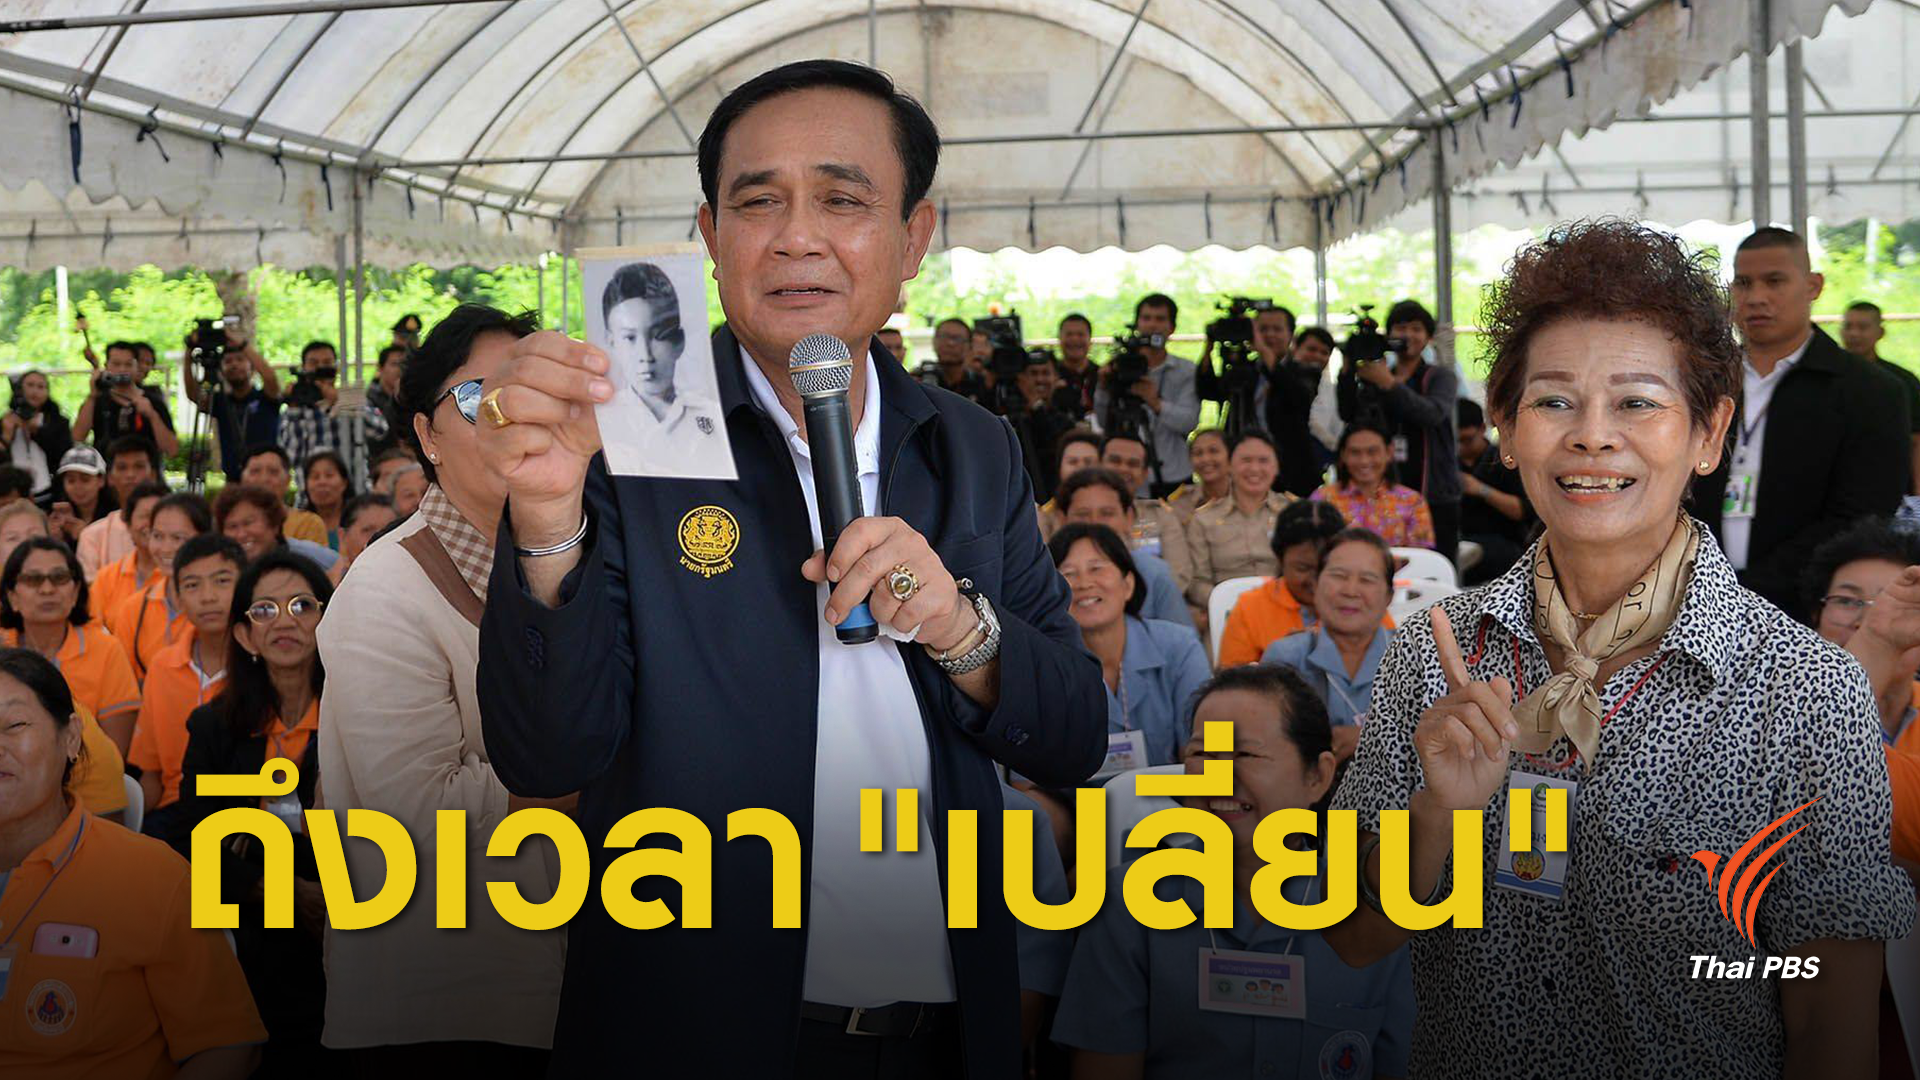 นายกรัฐมนตรี ปลุกชาวลพบุรี "ถึงเวลาเปลี่ยน"